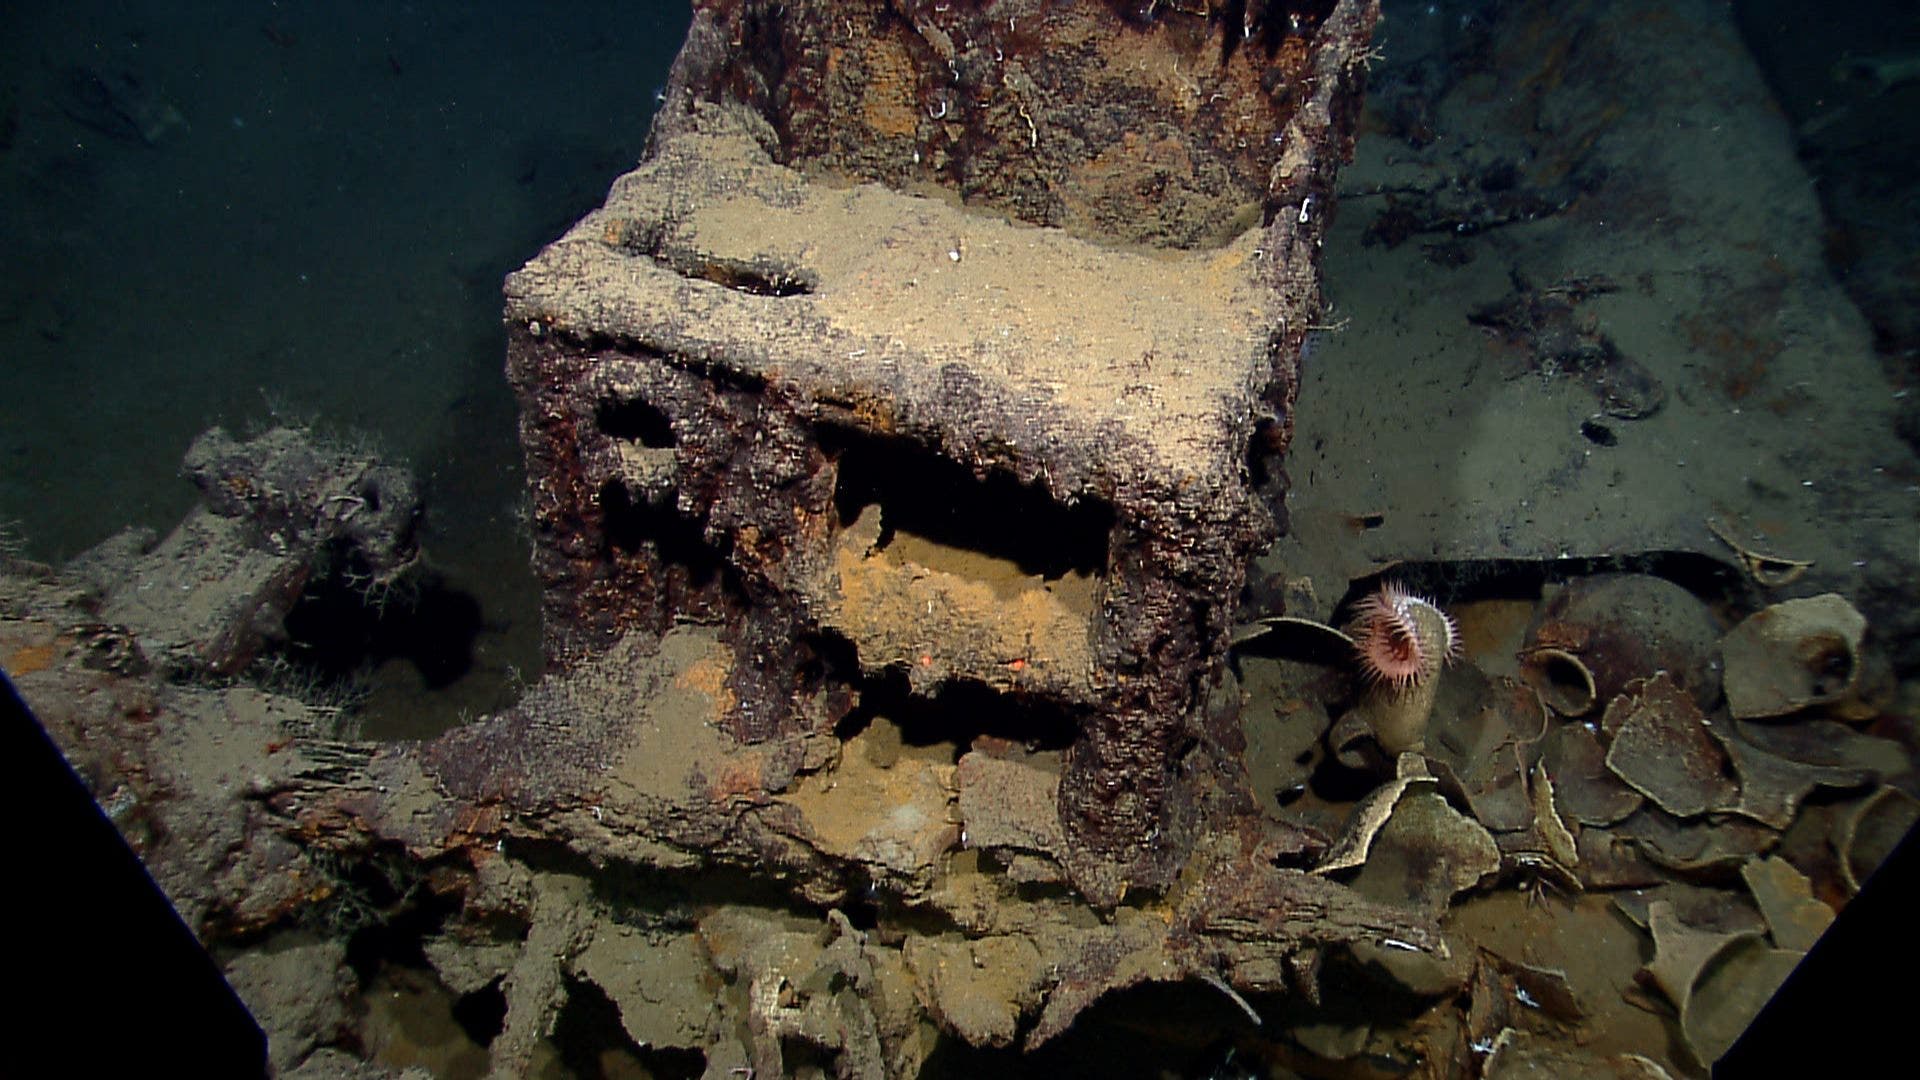 Shipwreck Found in Mexico